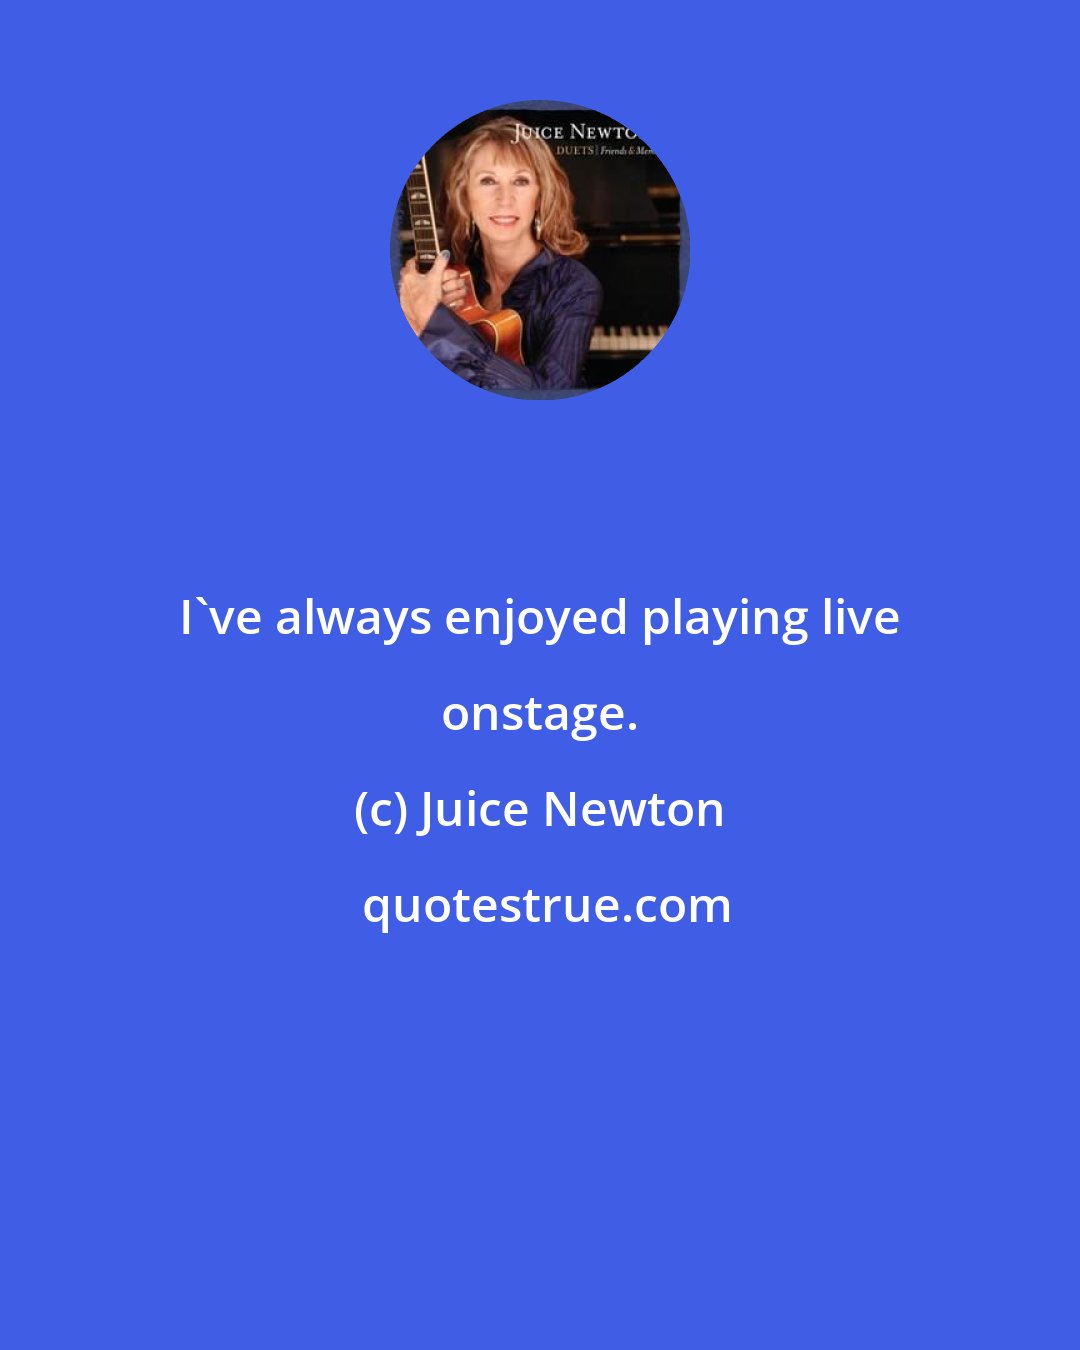 Juice Newton: I've always enjoyed playing live onstage.